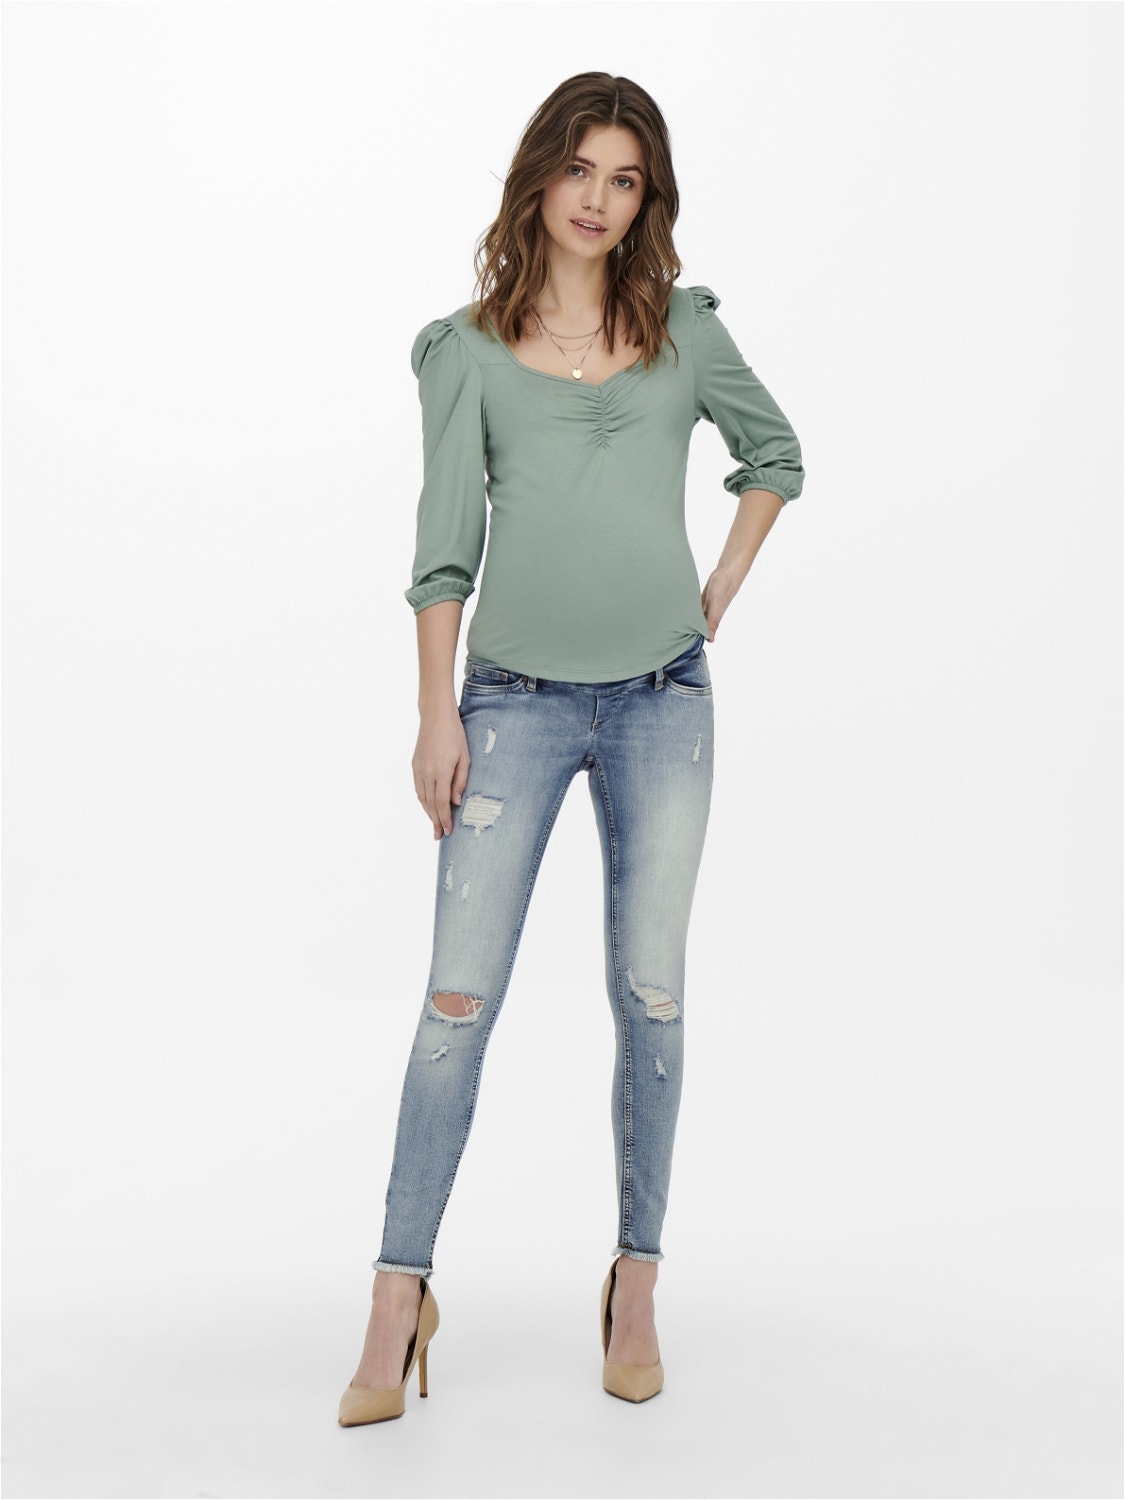 ONLY Skinny fit Versleten zoom Jeans -Light Blue Denim - 15257016